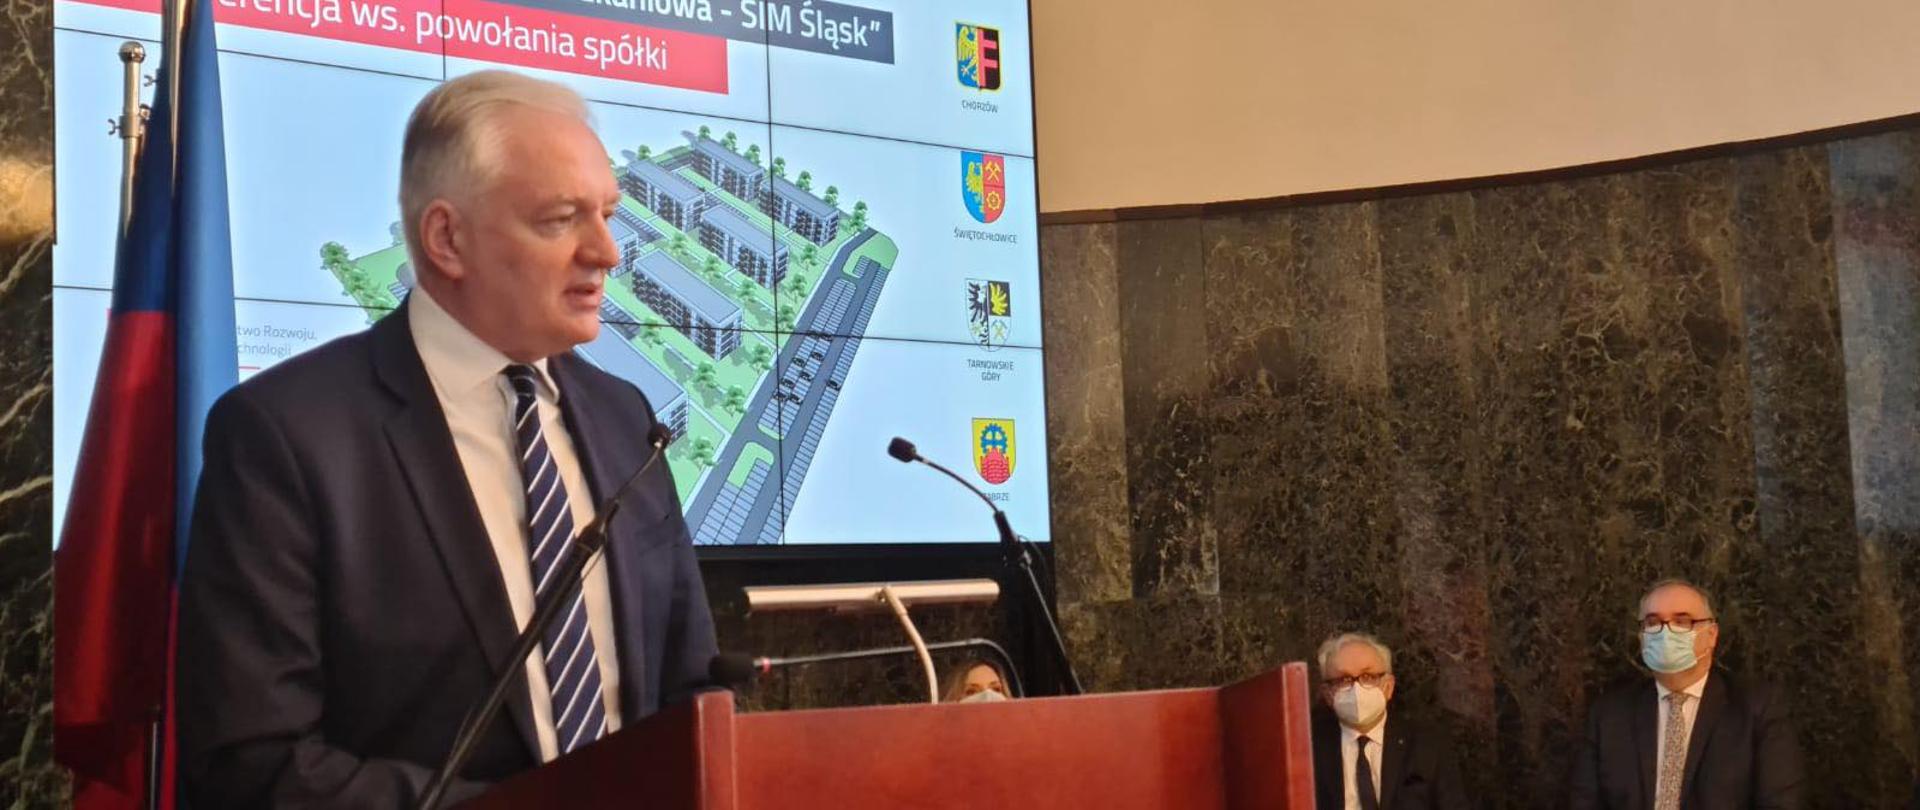 Premier Jarosław Gowin przemawia na konferencji prasowej dot. zawarcia umowy spółki SIM KZN Śląsk